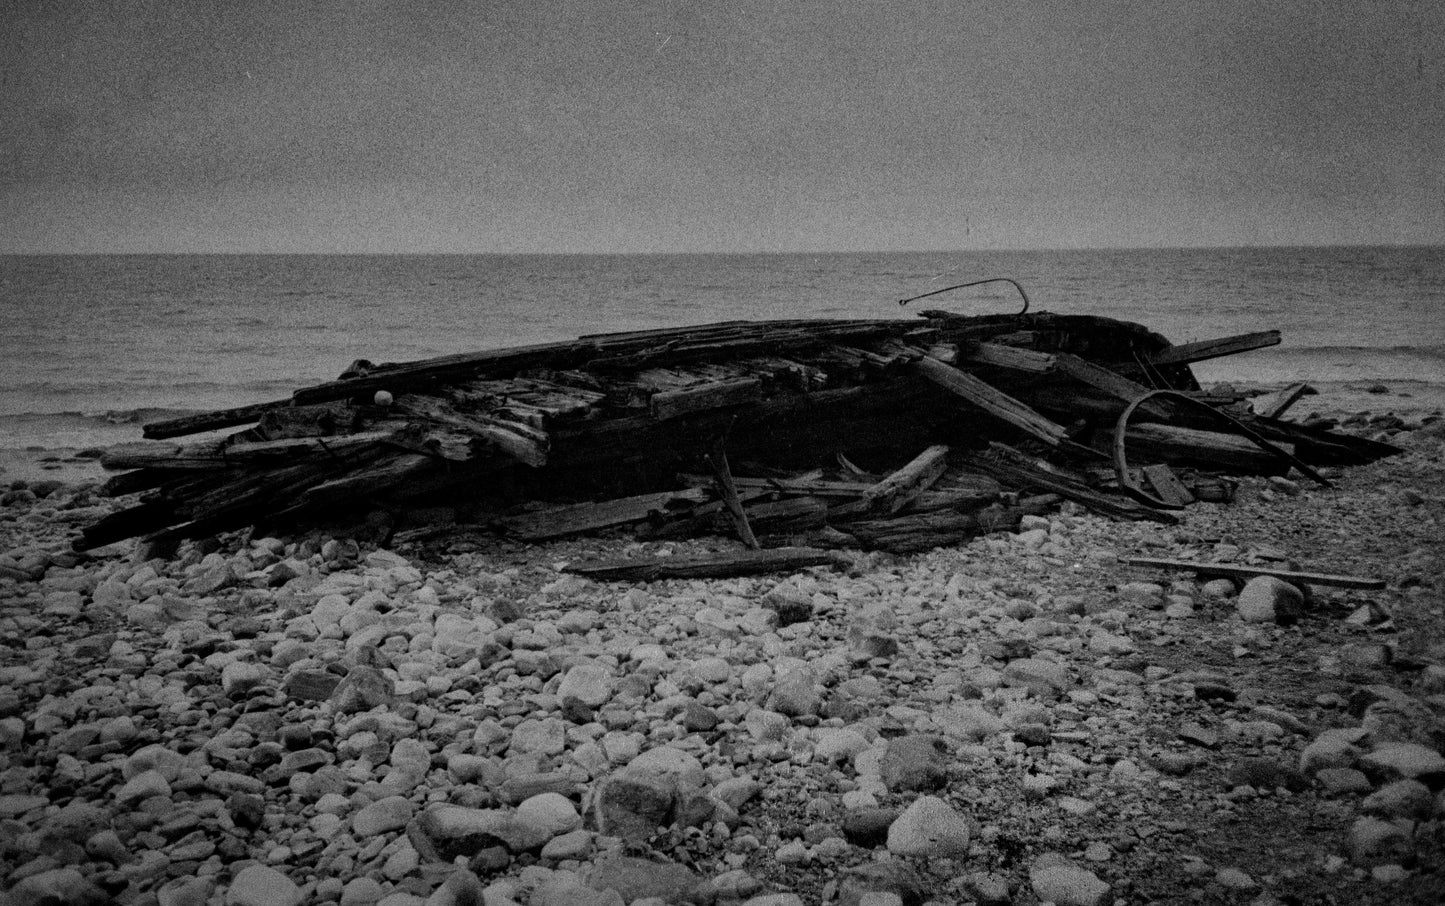 Öland Boatwreck - Cato Lein